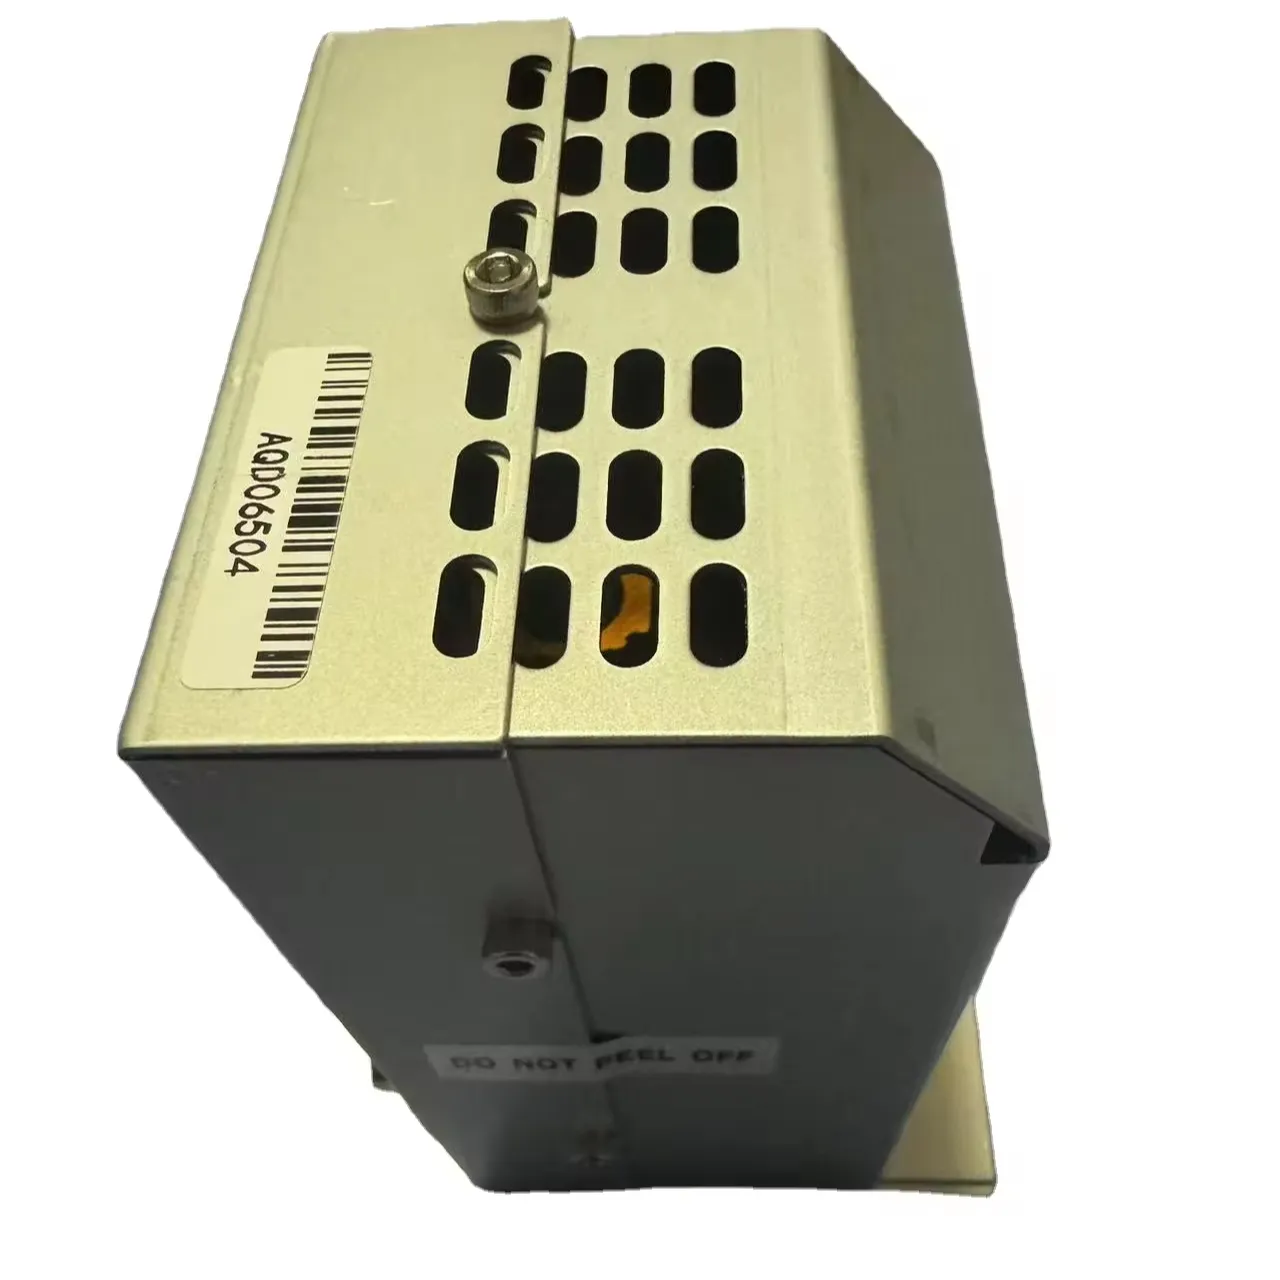 Z025645/I124020 Noritsu OMA minilab láser máquina de la OMA mejorado qss 3001, 3101, 3201, 3301, 3401, 3501, 3701, 3801, 3011, 3202, 3502, 3702